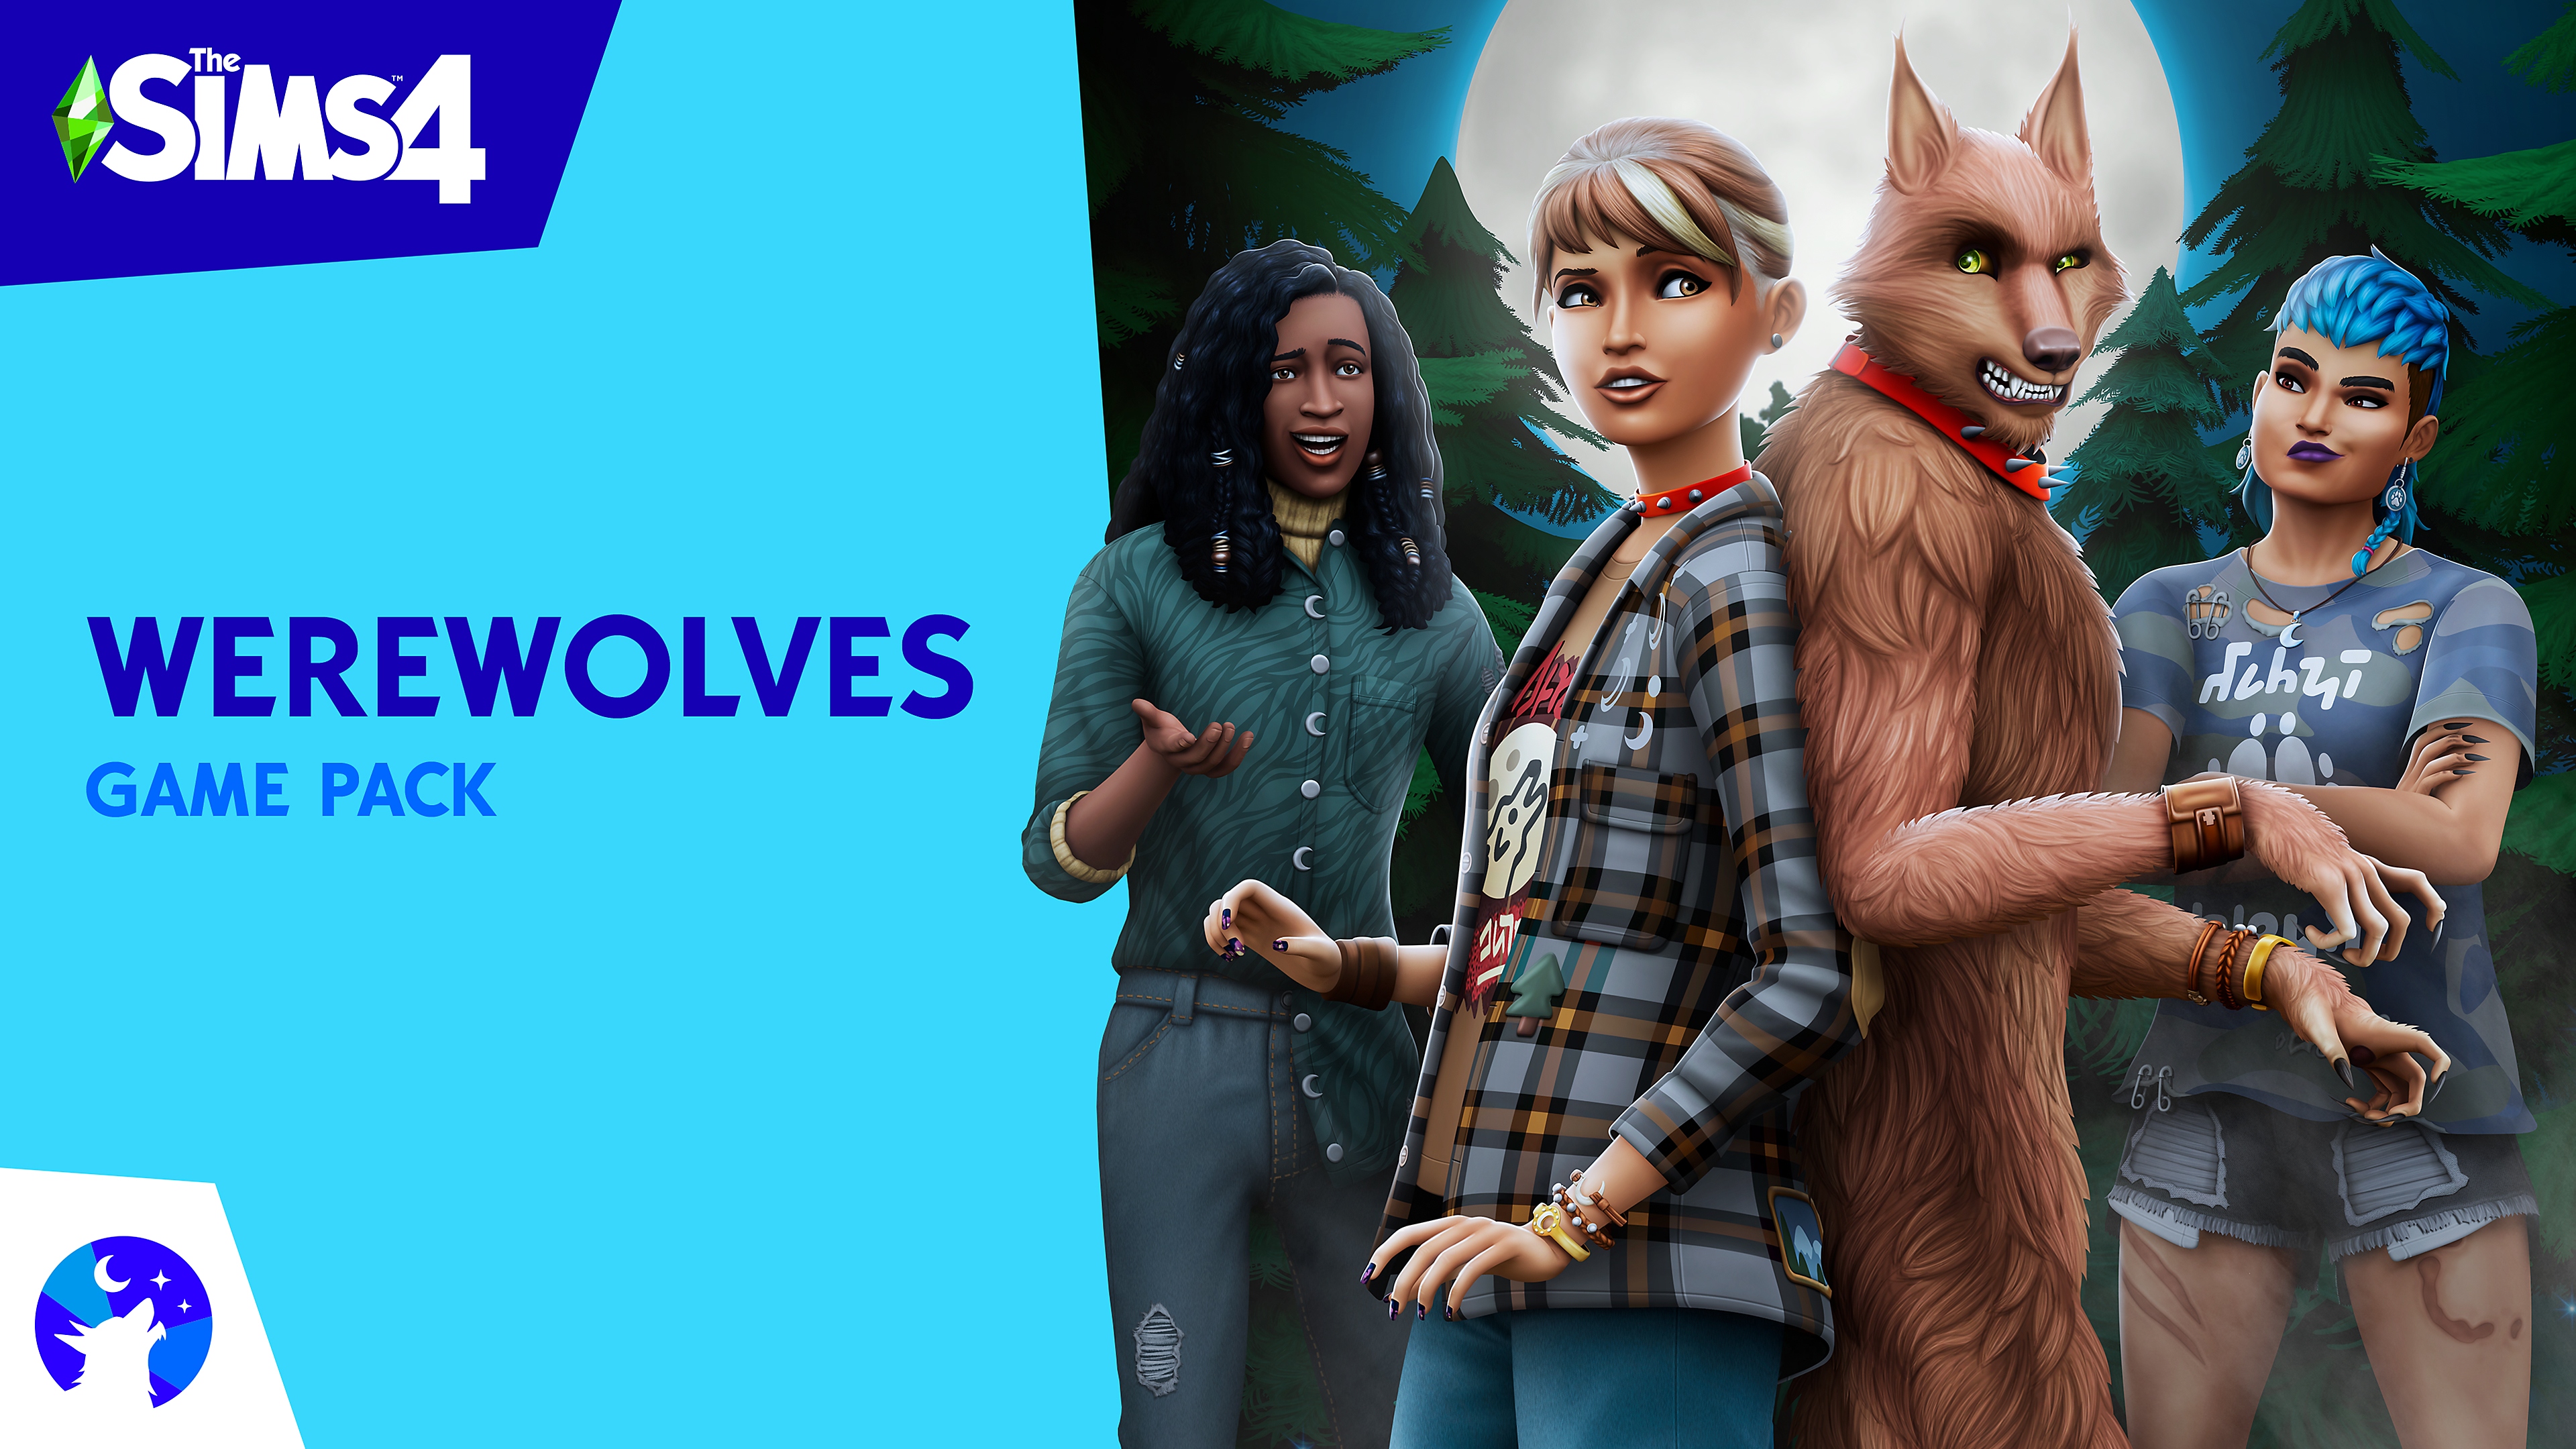 The Sims 4 Werewolves paket igre sa konceptualnim umetničkim prikazom sa Sims likovima i vukodlakom